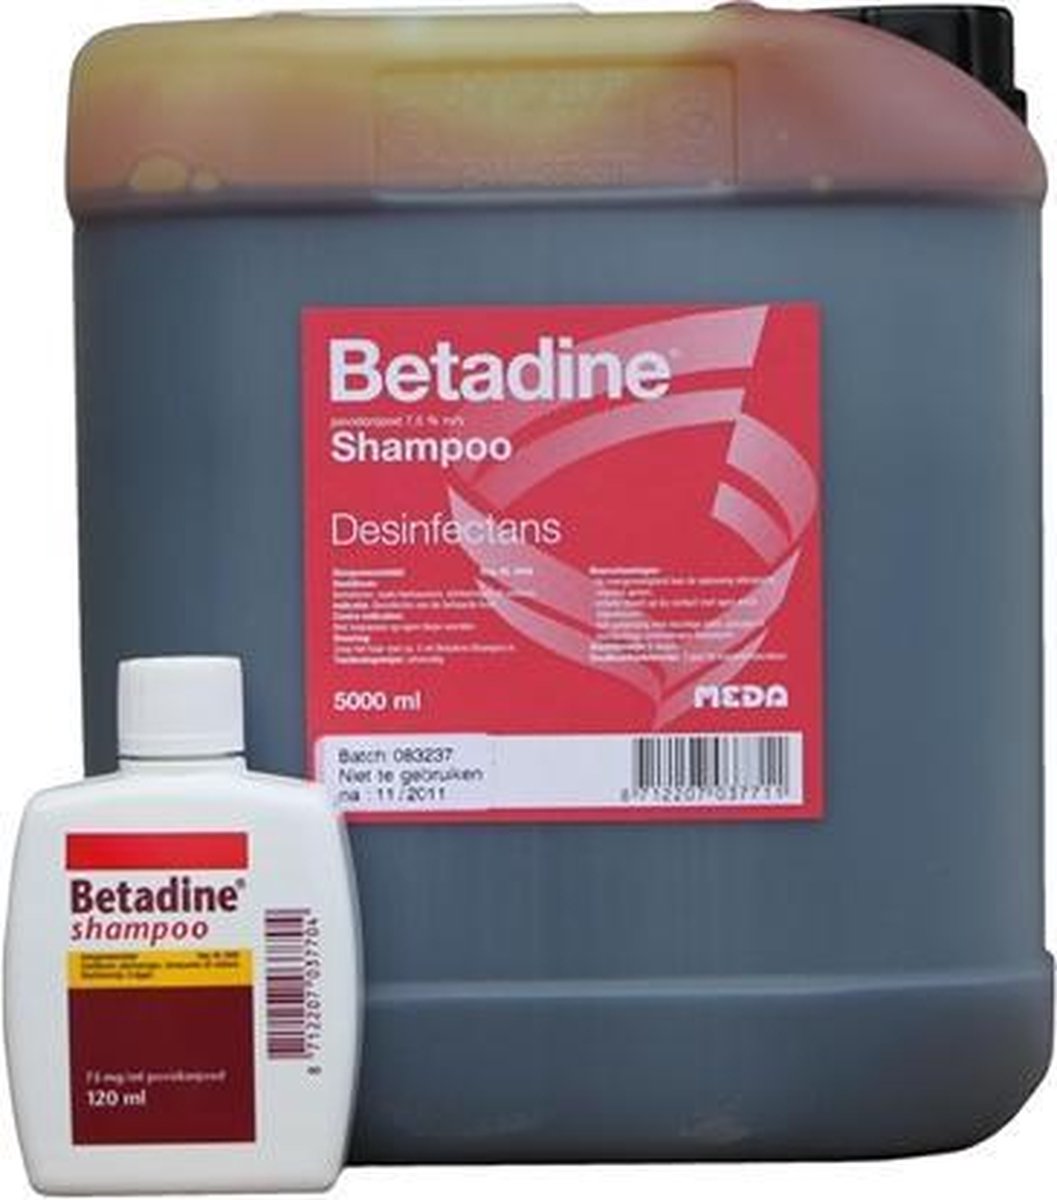 Betadine shampoo REG NL 3448 | bol.com